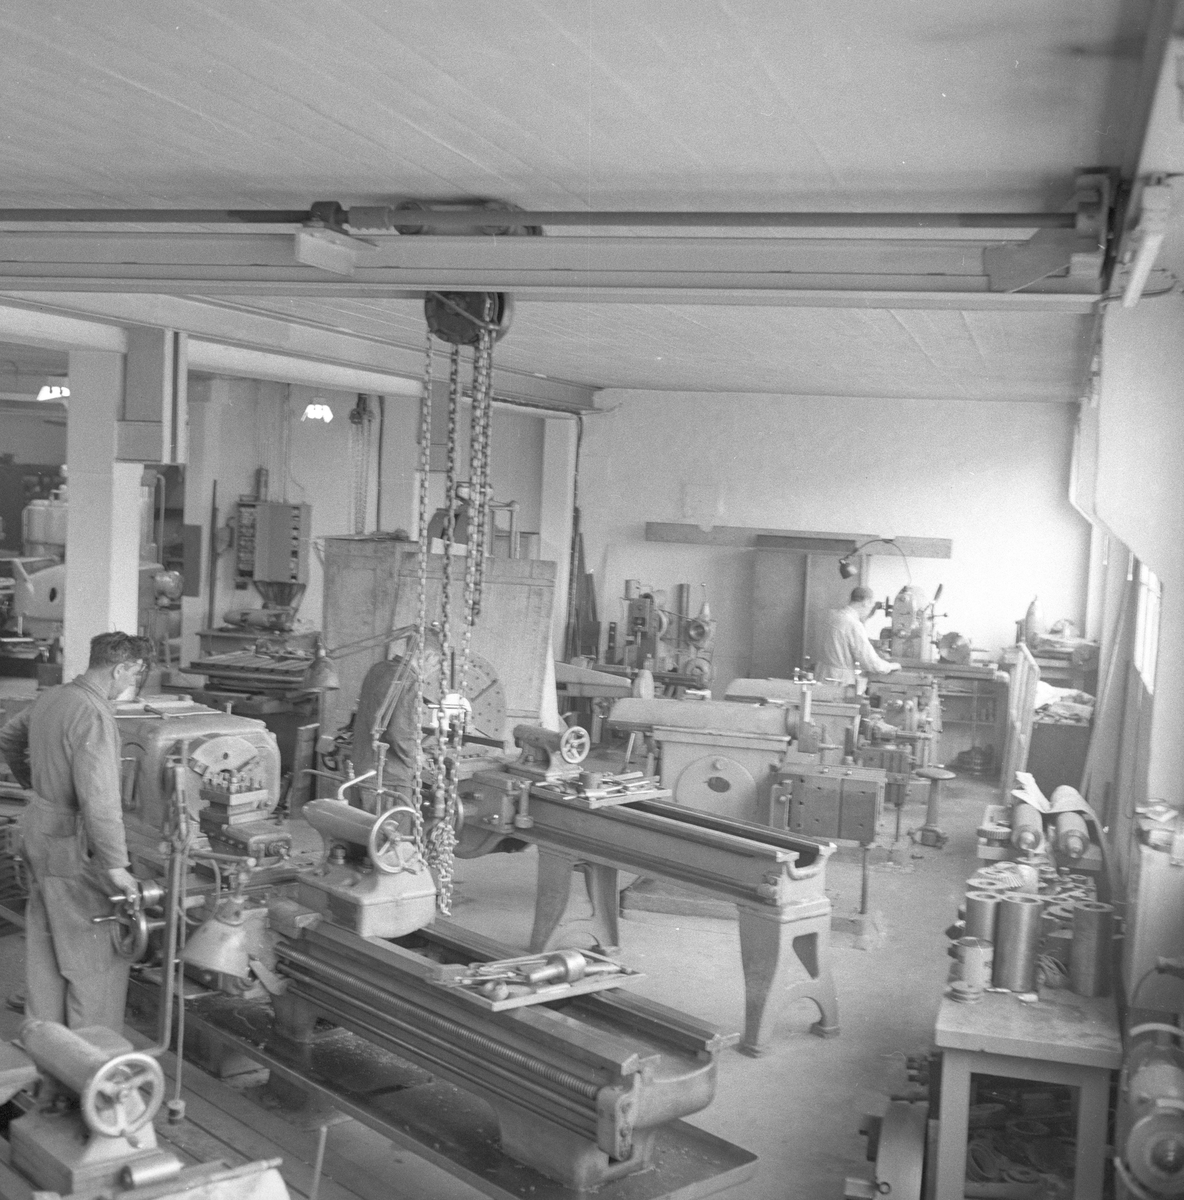 Hamar, 30.04.1955, Ideal Flatbrødfabrikik, fra produksjonslokalet.
(Alternativt fra Ham-Jern samme sted?)